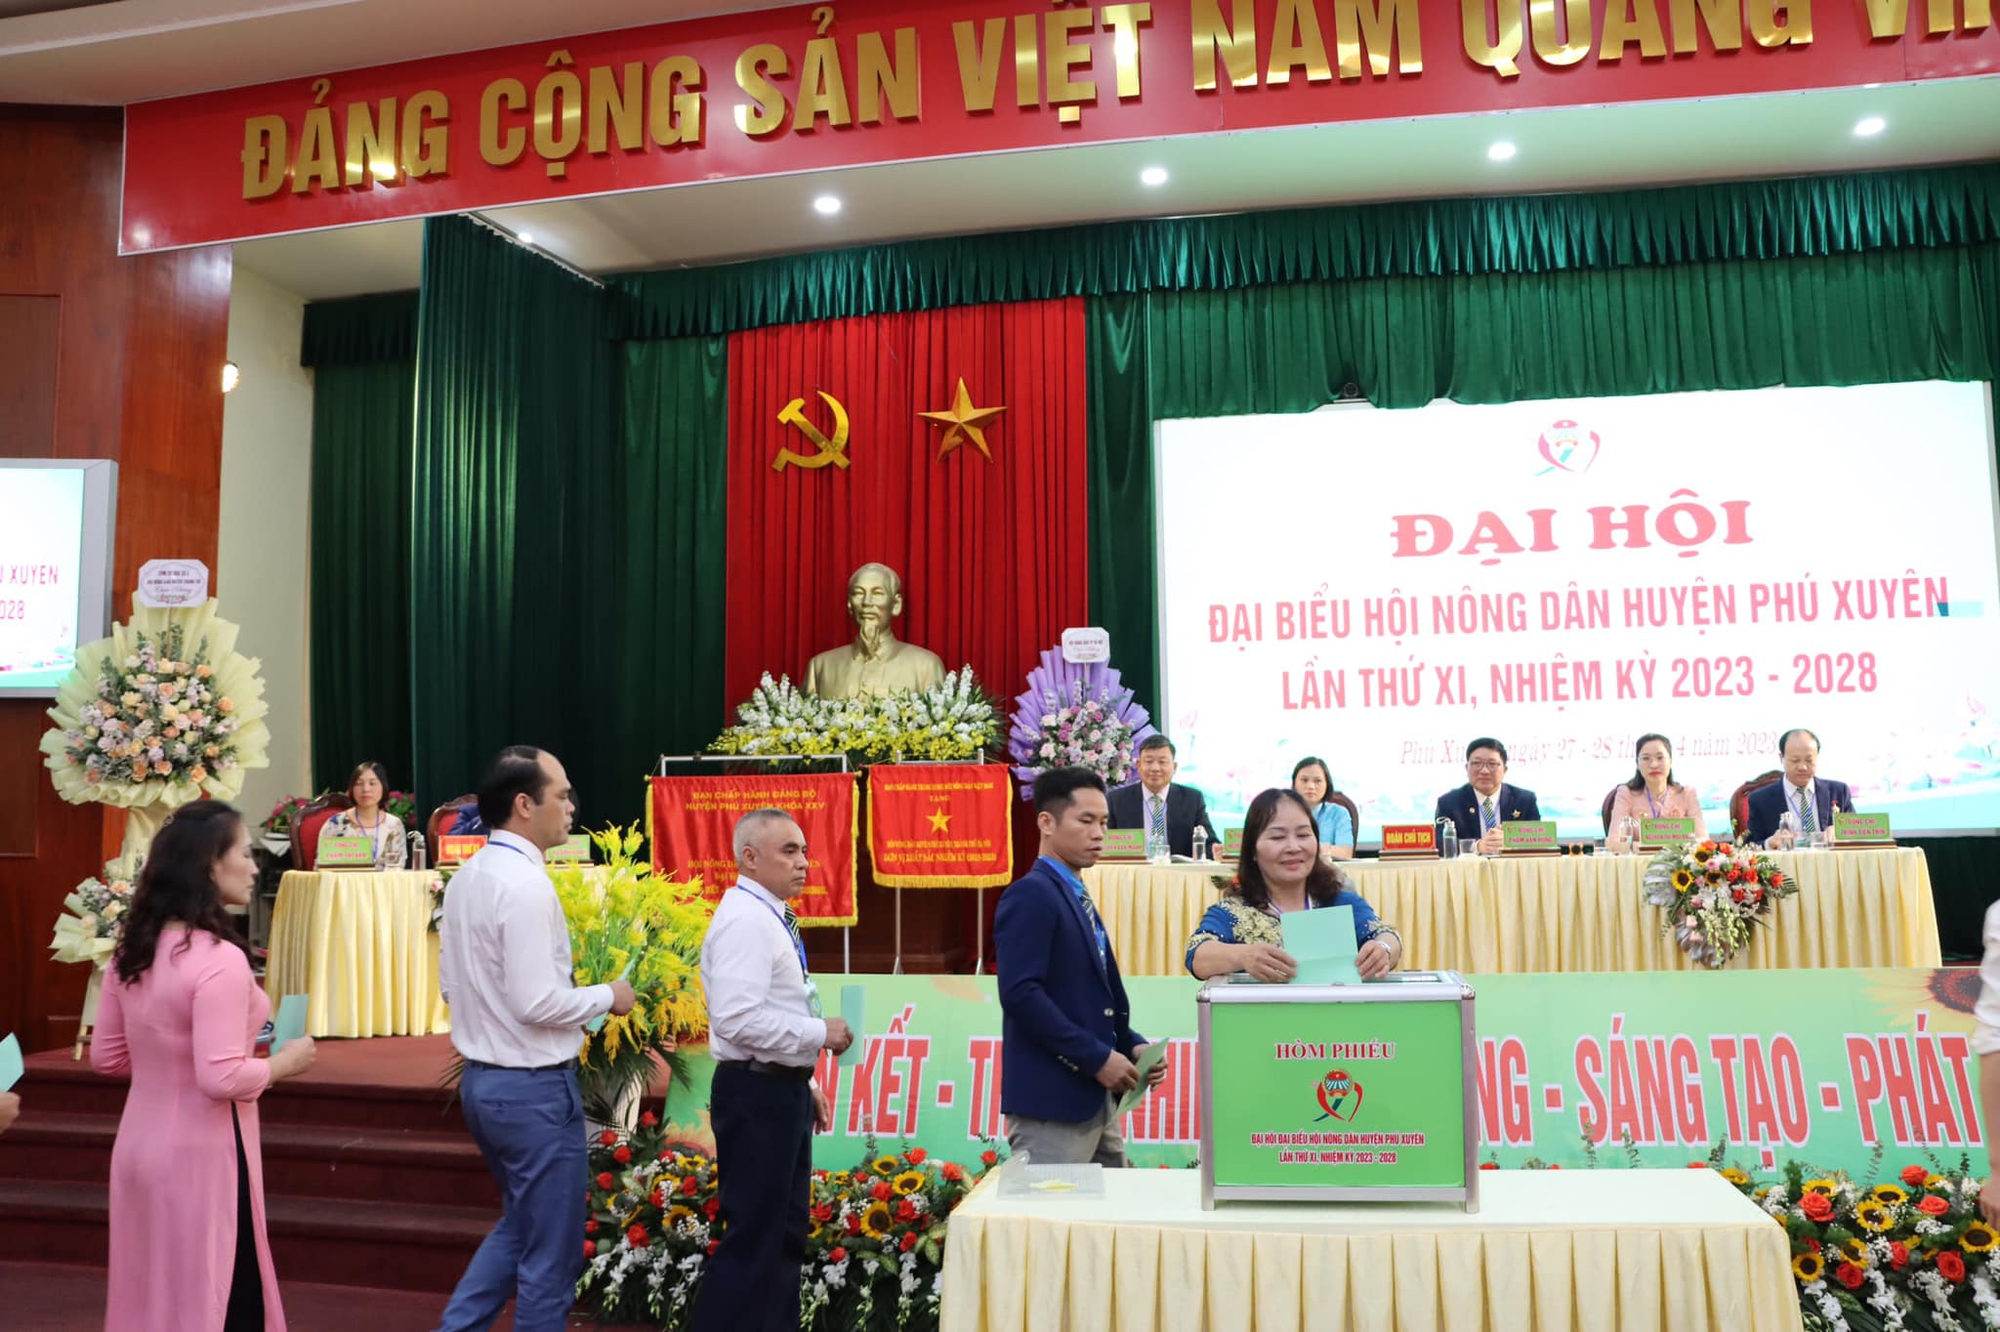 Hà Nội: Ông Phạm Văn Hùng tái đắc cử Chủ tịch Hội Nông dân huyện Phú Xuyên - Ảnh 3.